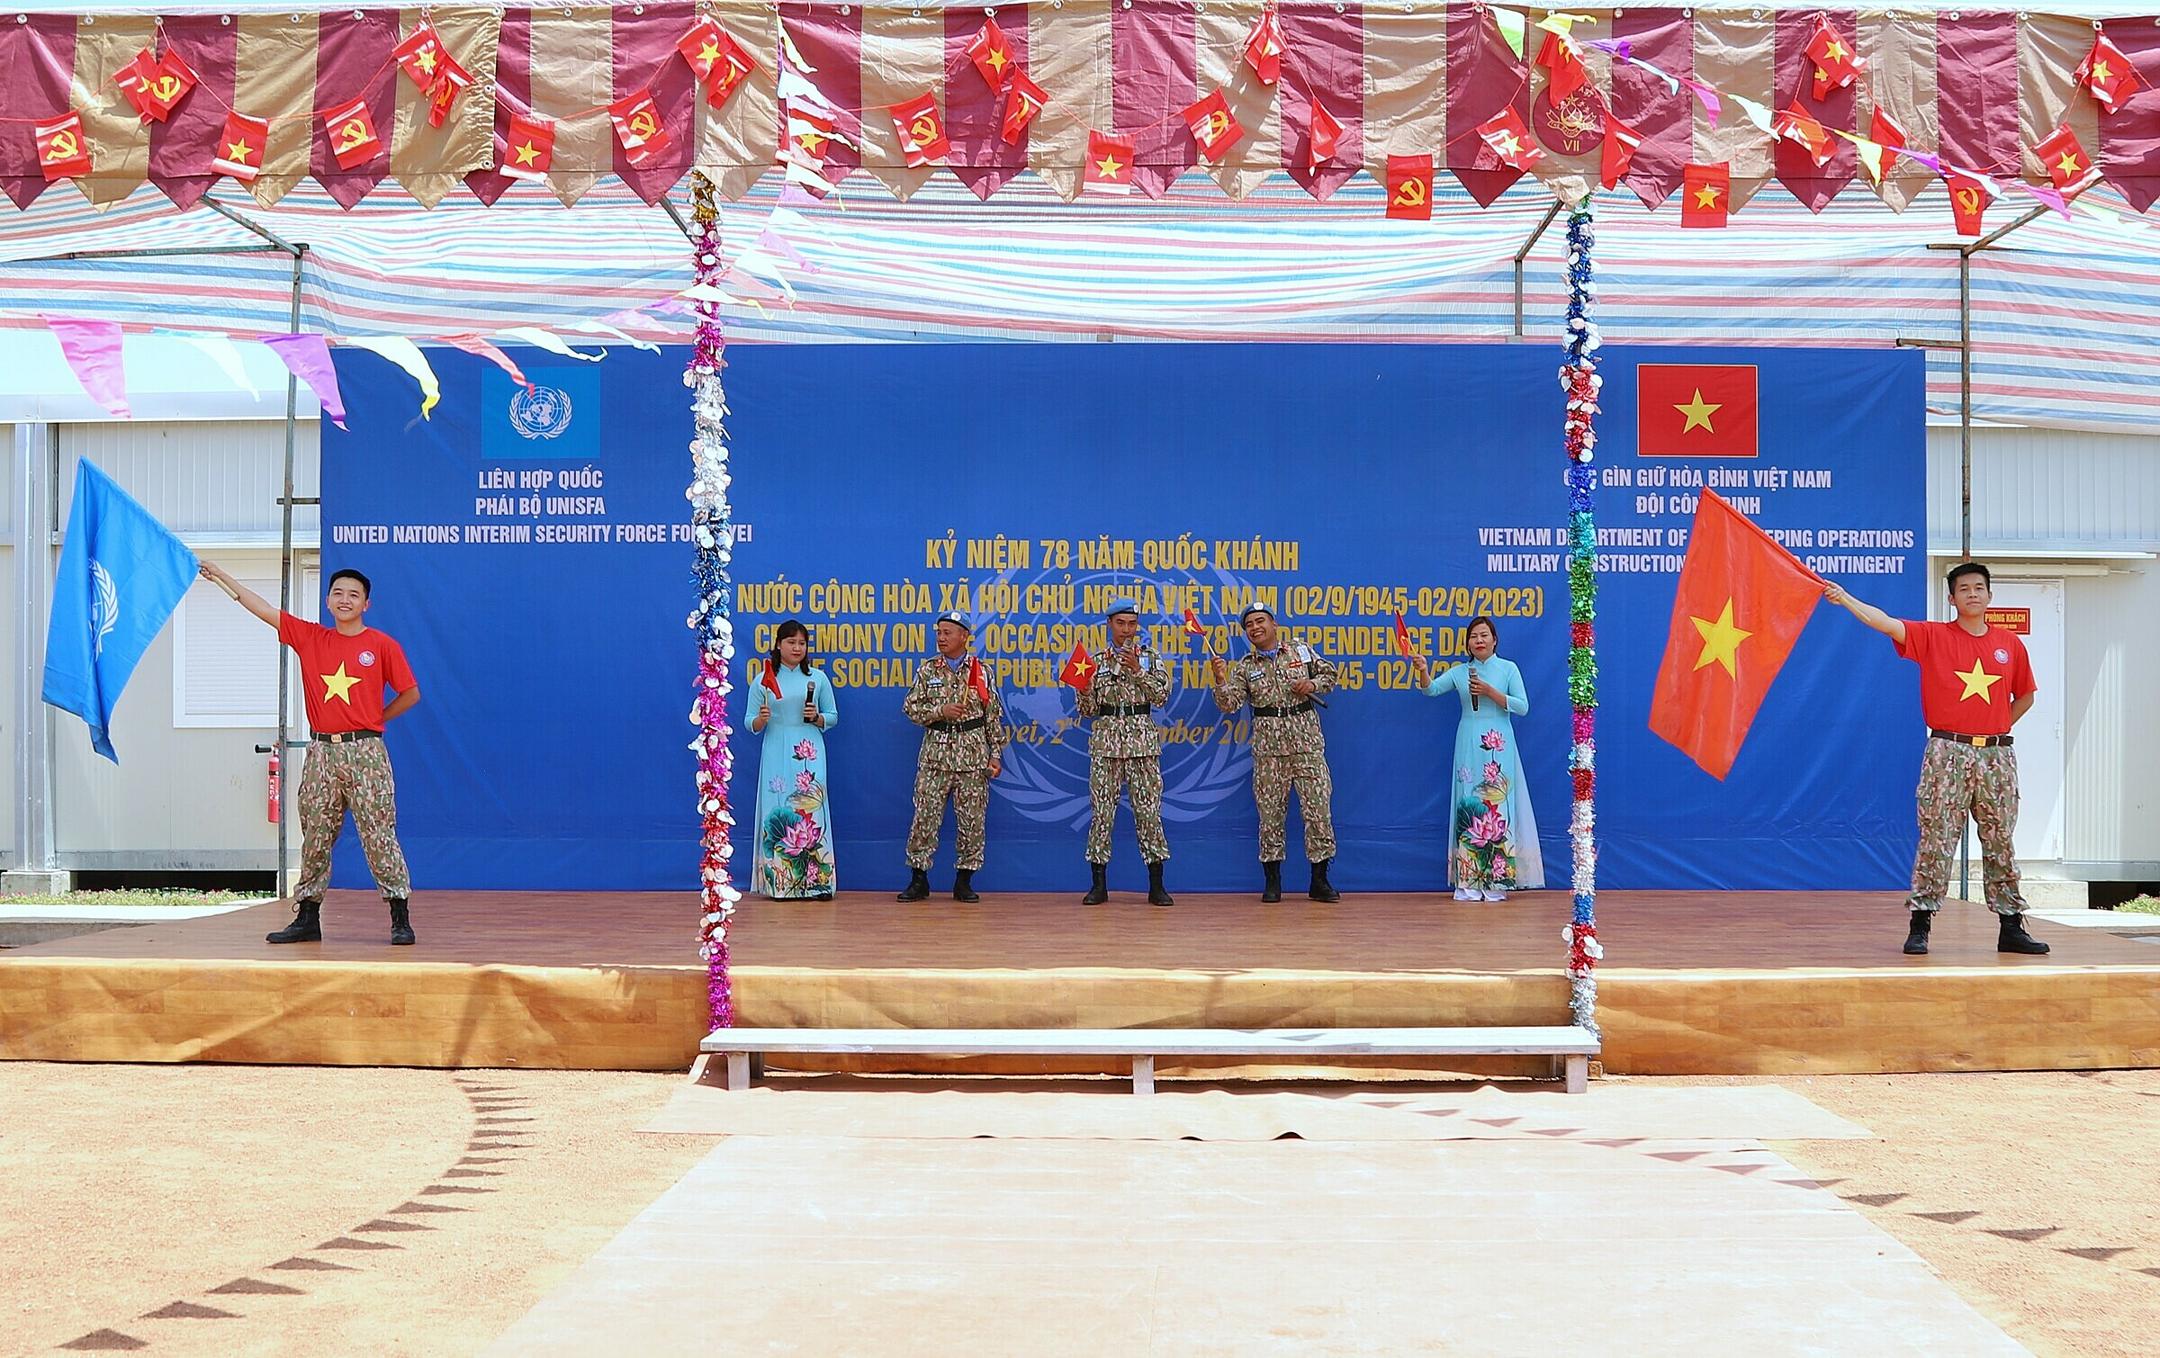 Bộ đội Việt Nam mừng Quốc khánh tại châu Phi